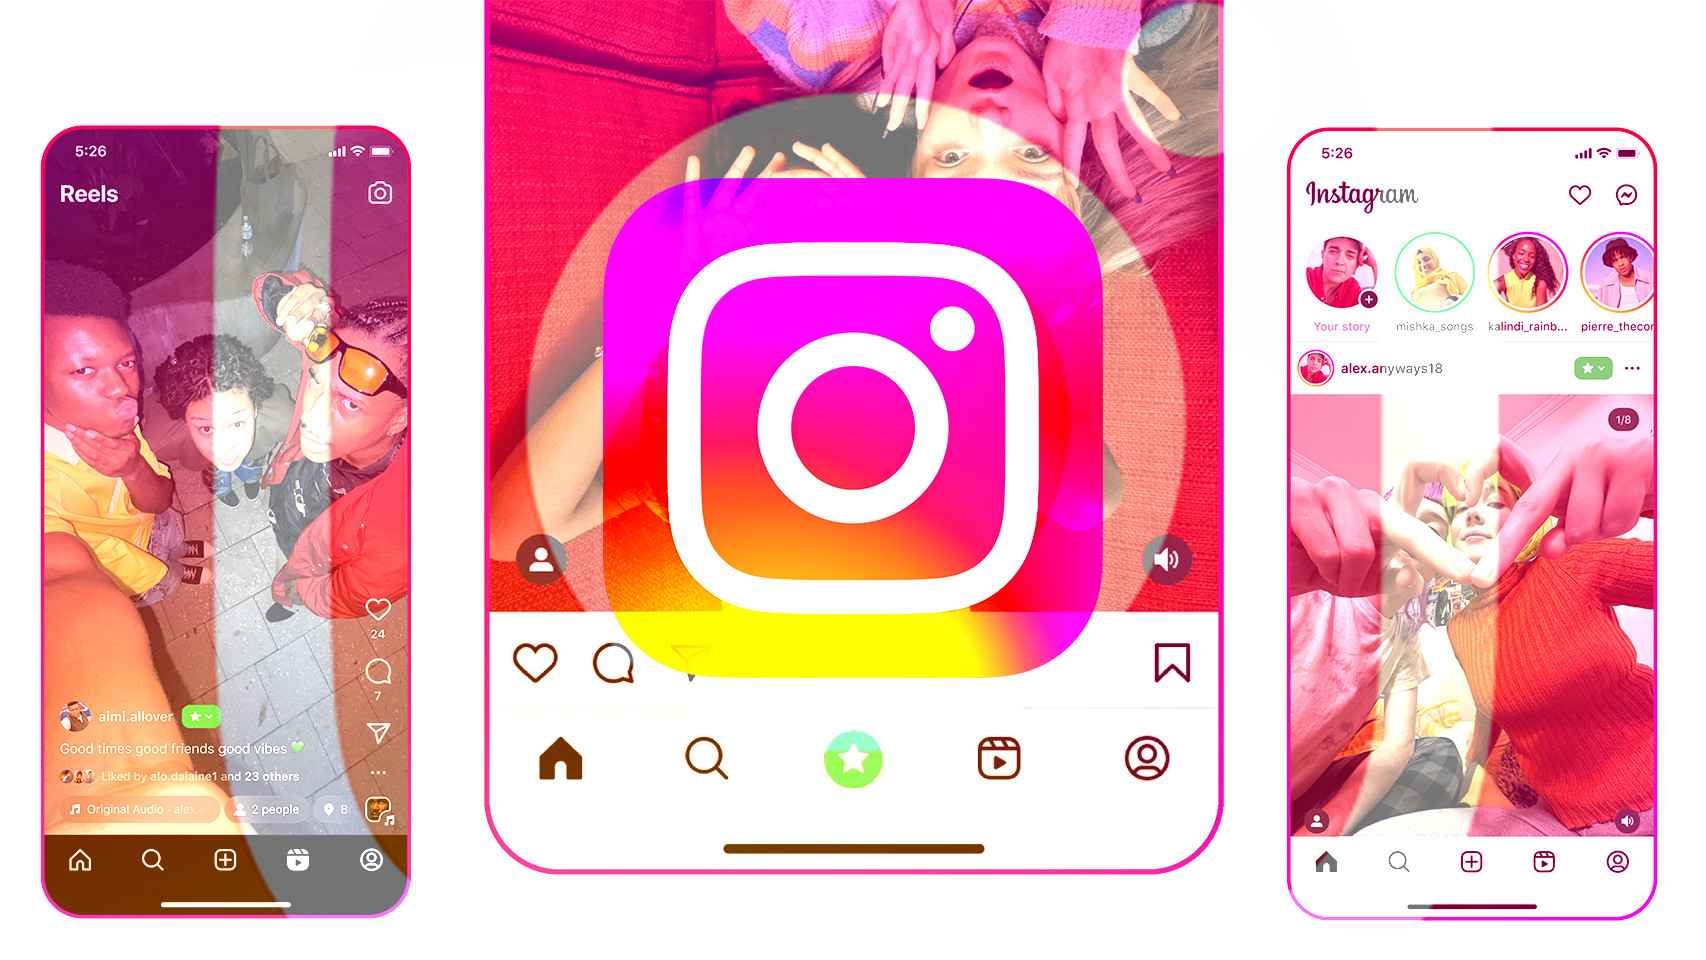 Instagram se actualiza con el nuevo contenido que puedes compartir con amigos